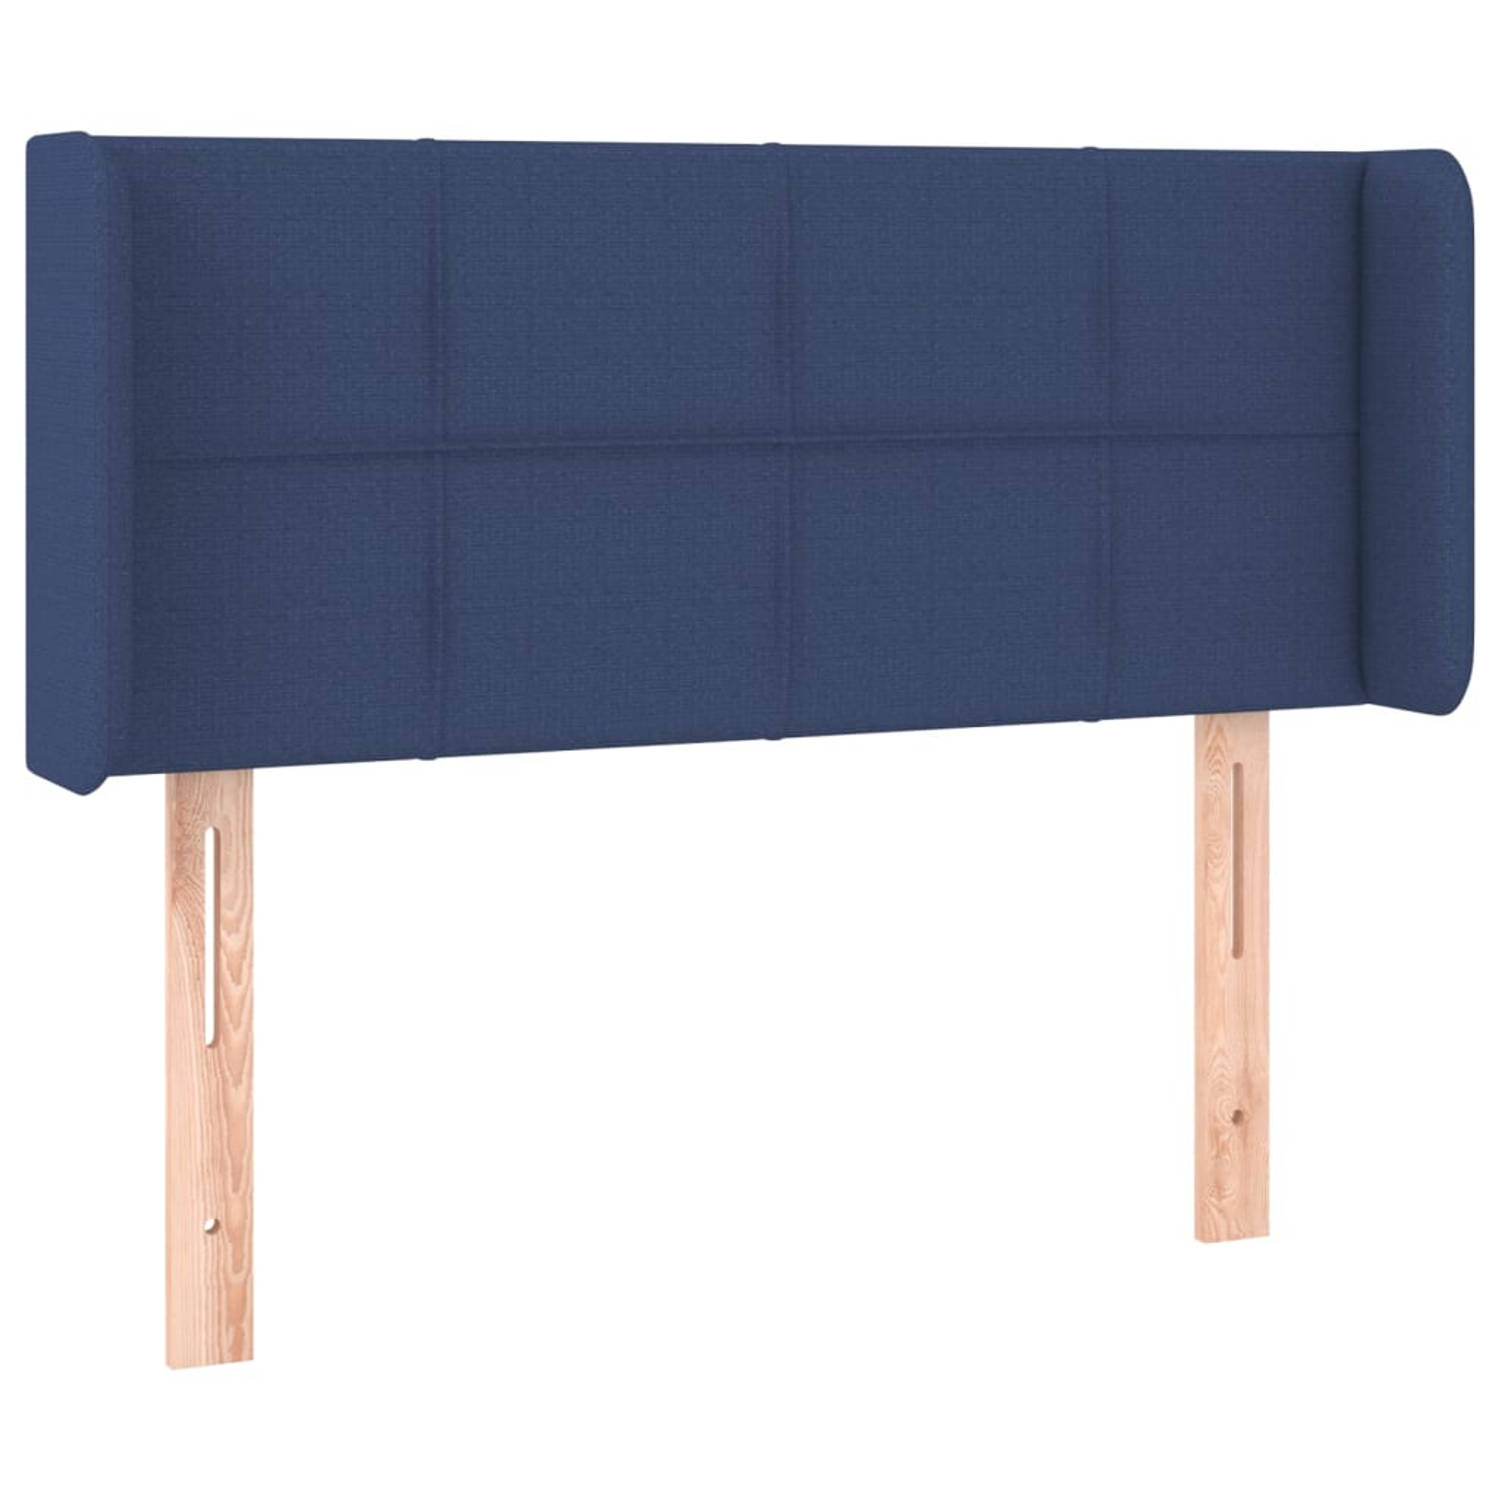 The Living Store Hoofdeind Blauw - 103 x 16 x 78/88 cm - Trendy ontwerp - Duurzaam materiaal - Stevige poten - Verstelbare hoogte - Comfortabele ondersteuning